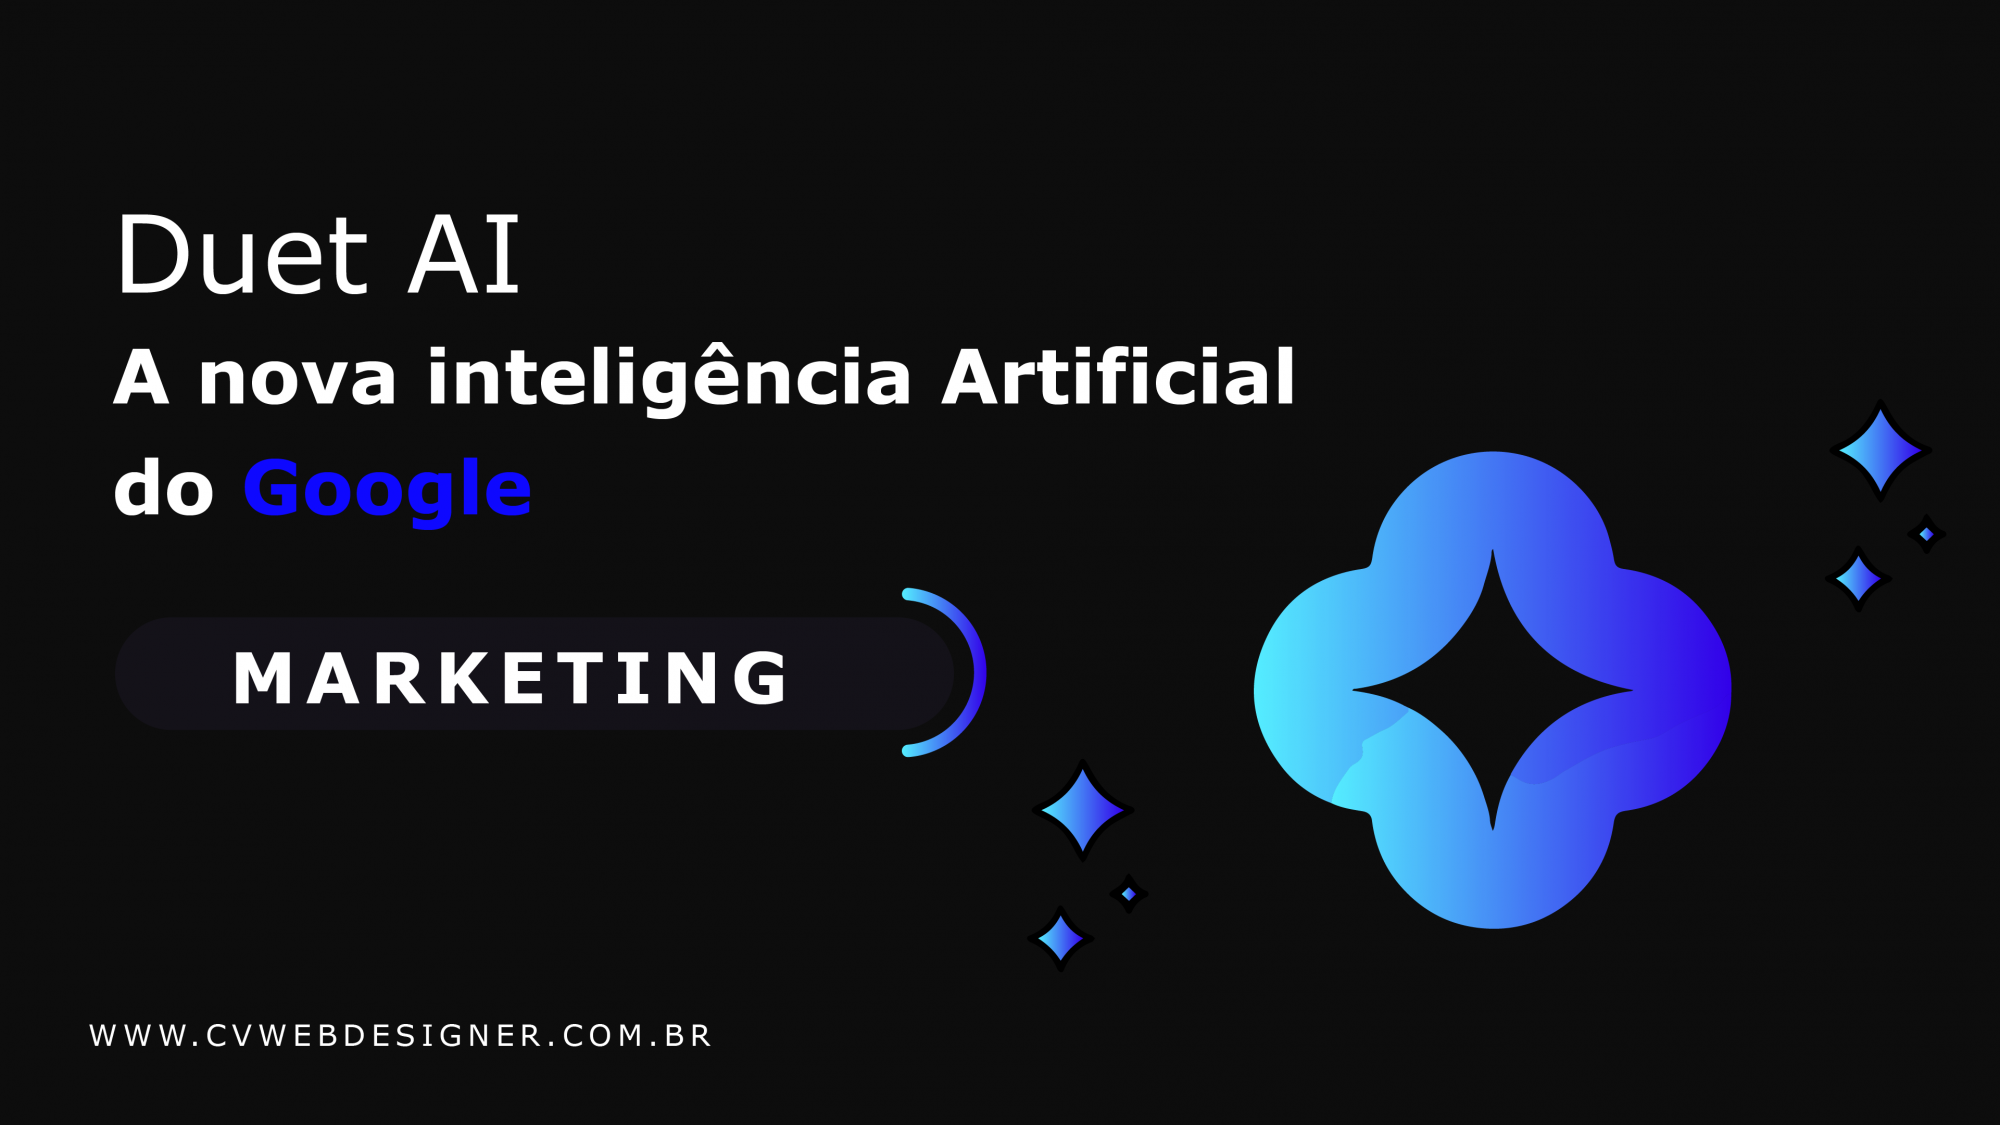 Duet AI: A nova Inteligência Artificial do Google | Agência Cvwebdesigner®Criação de websites profissionais